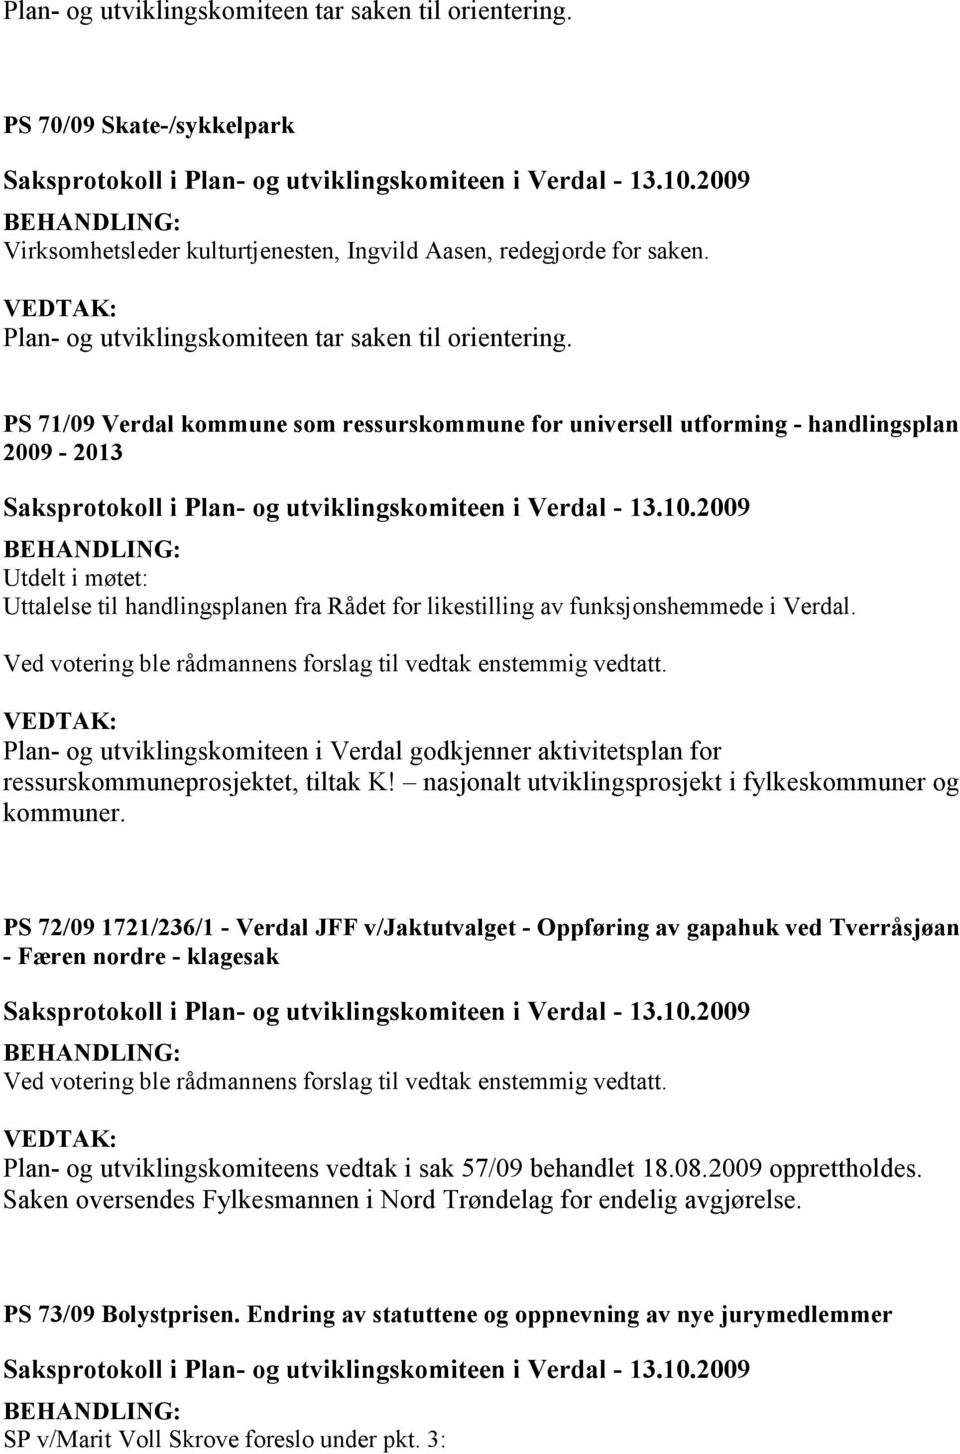 PS 71/09 Verdal kommune som ressurskommune for universell utforming - handlingsplan 2009-2013 Utdelt i møtet: Uttalelse til handlingsplanen fra Rådet for likestilling av funksjonshemmede i Verdal.